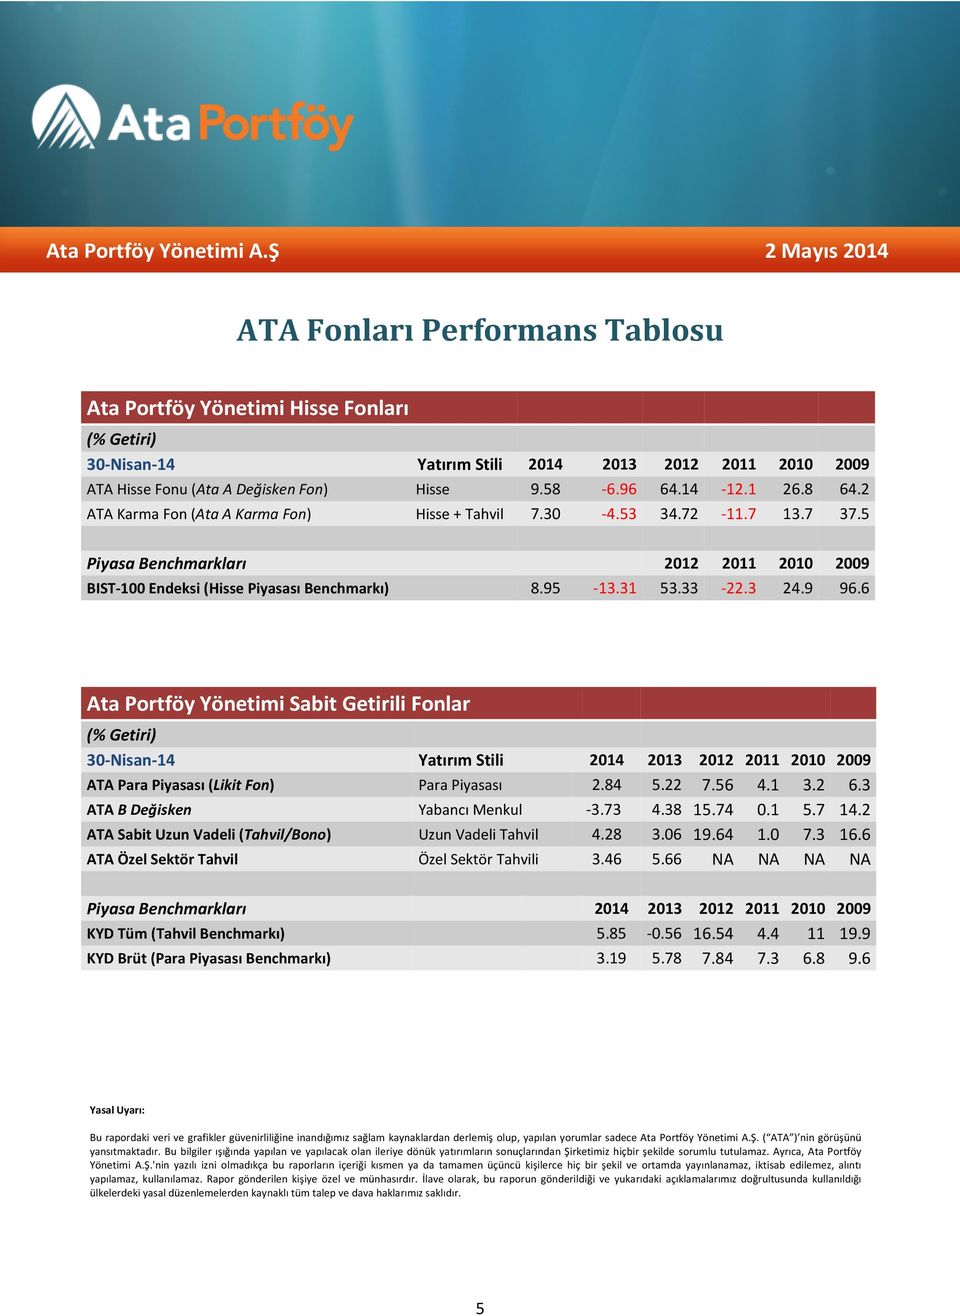 9 96.6 Ata Portföy Yönetimi Sabit Getirili Fonlar (% Getiri) 30-Nisan-14 Yatırım Stili 2014 2013 2012 2011 2010 2009 ATA Para Piyasası (Likit Fon) Para Piyasası 2.84 5.22 7.56 4.1 3.2 6.